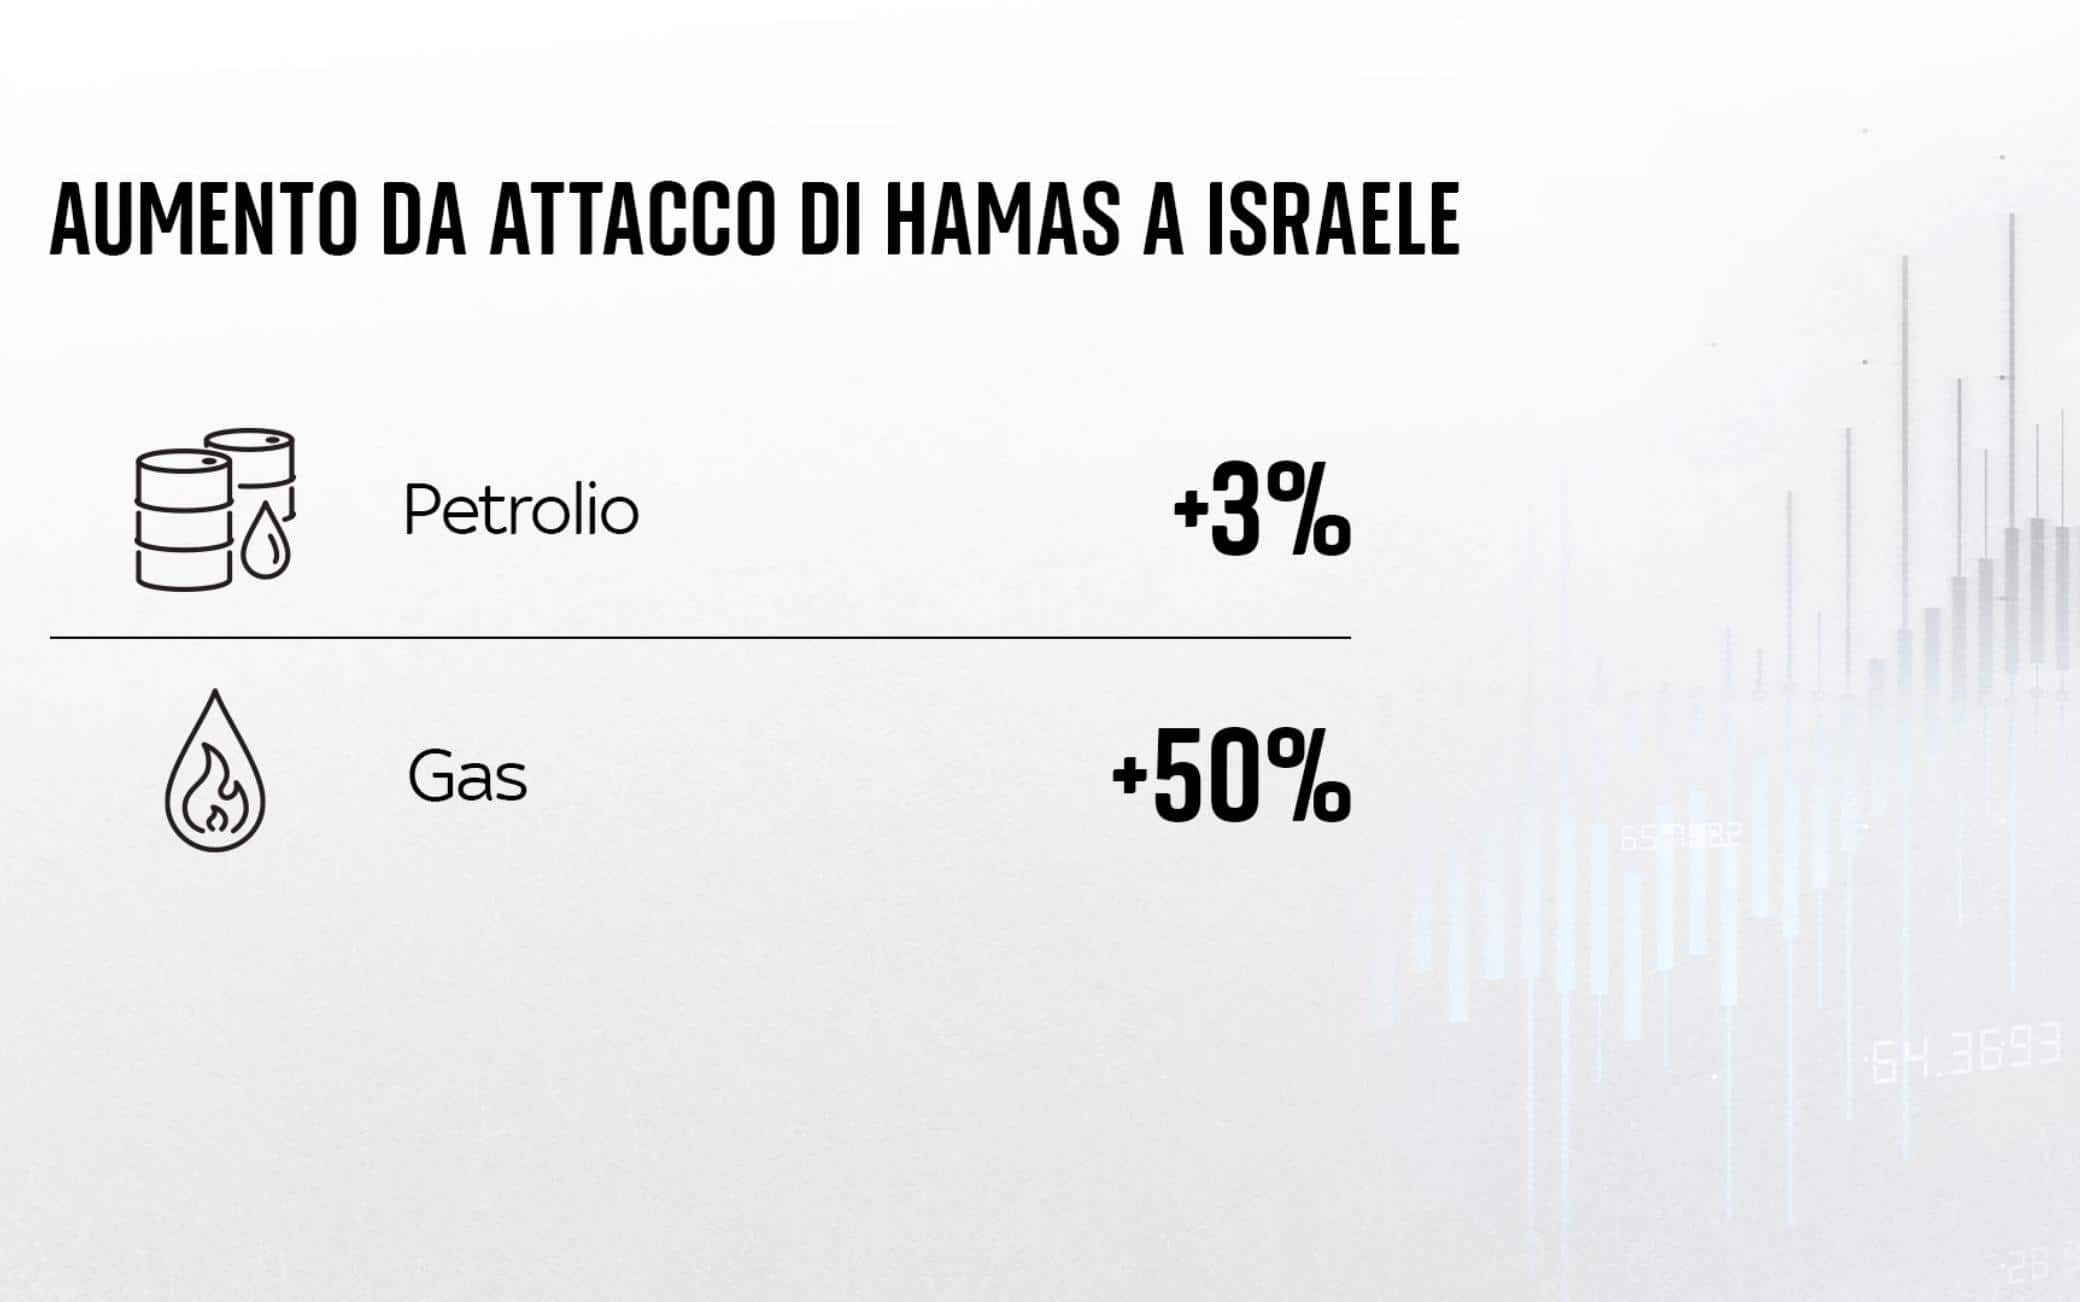 una grafica sull'aumento dei prezzi energetici per la guerra in Israele